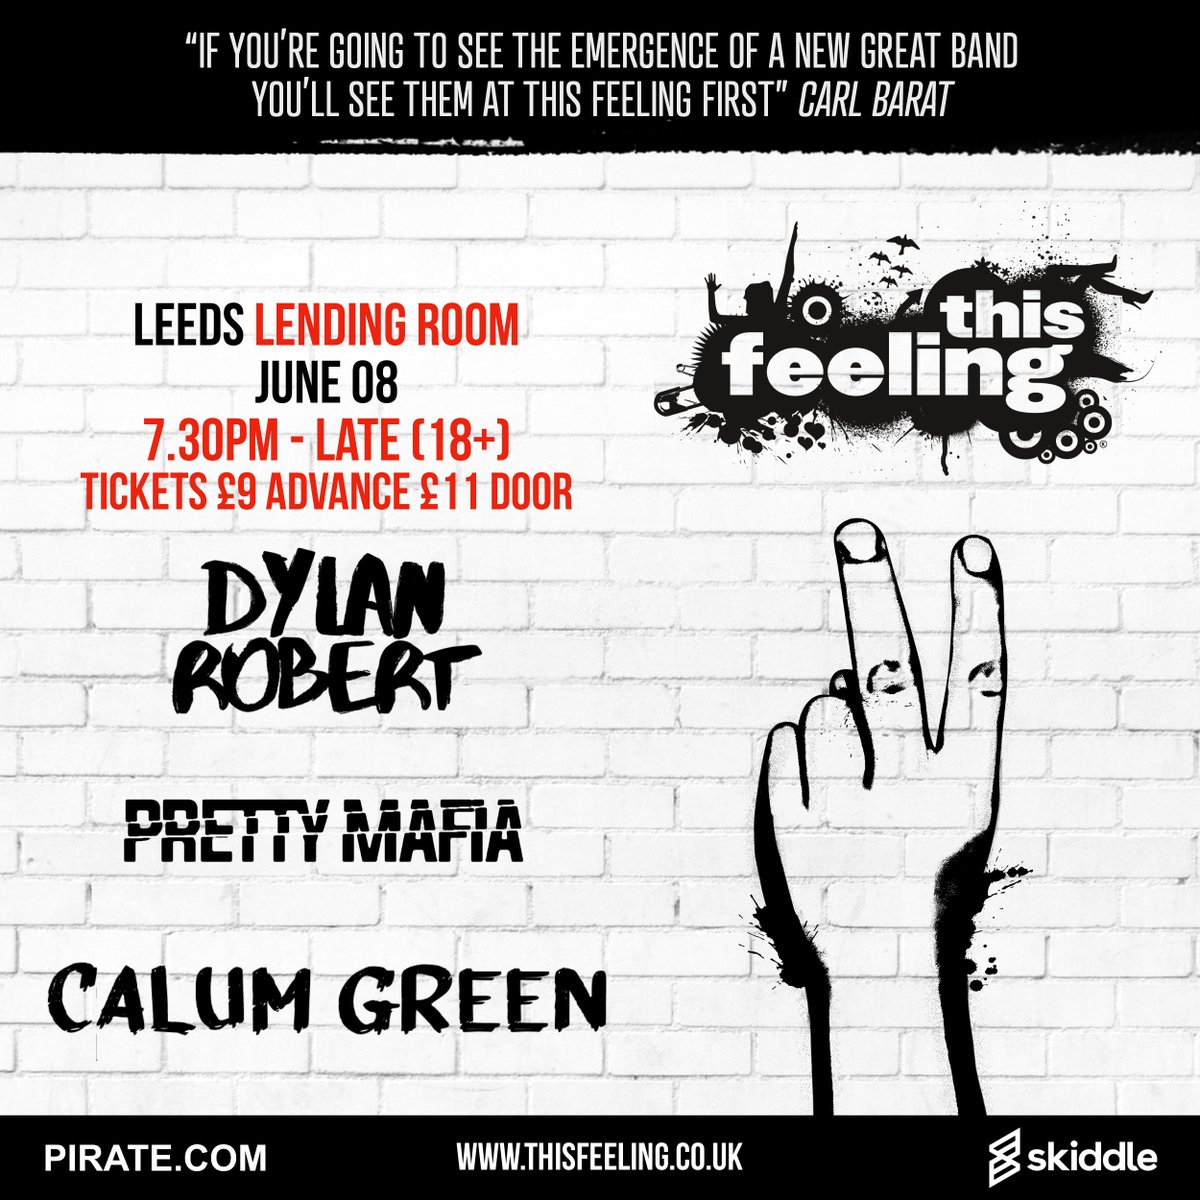 Full line up announced 🎸 June 08 Leeds @LendingRoomLDS ft. #DylanRobert @PrettyMafiaHQ & @calumgreenmusic 🎟️ skiddle.com/e/38299974